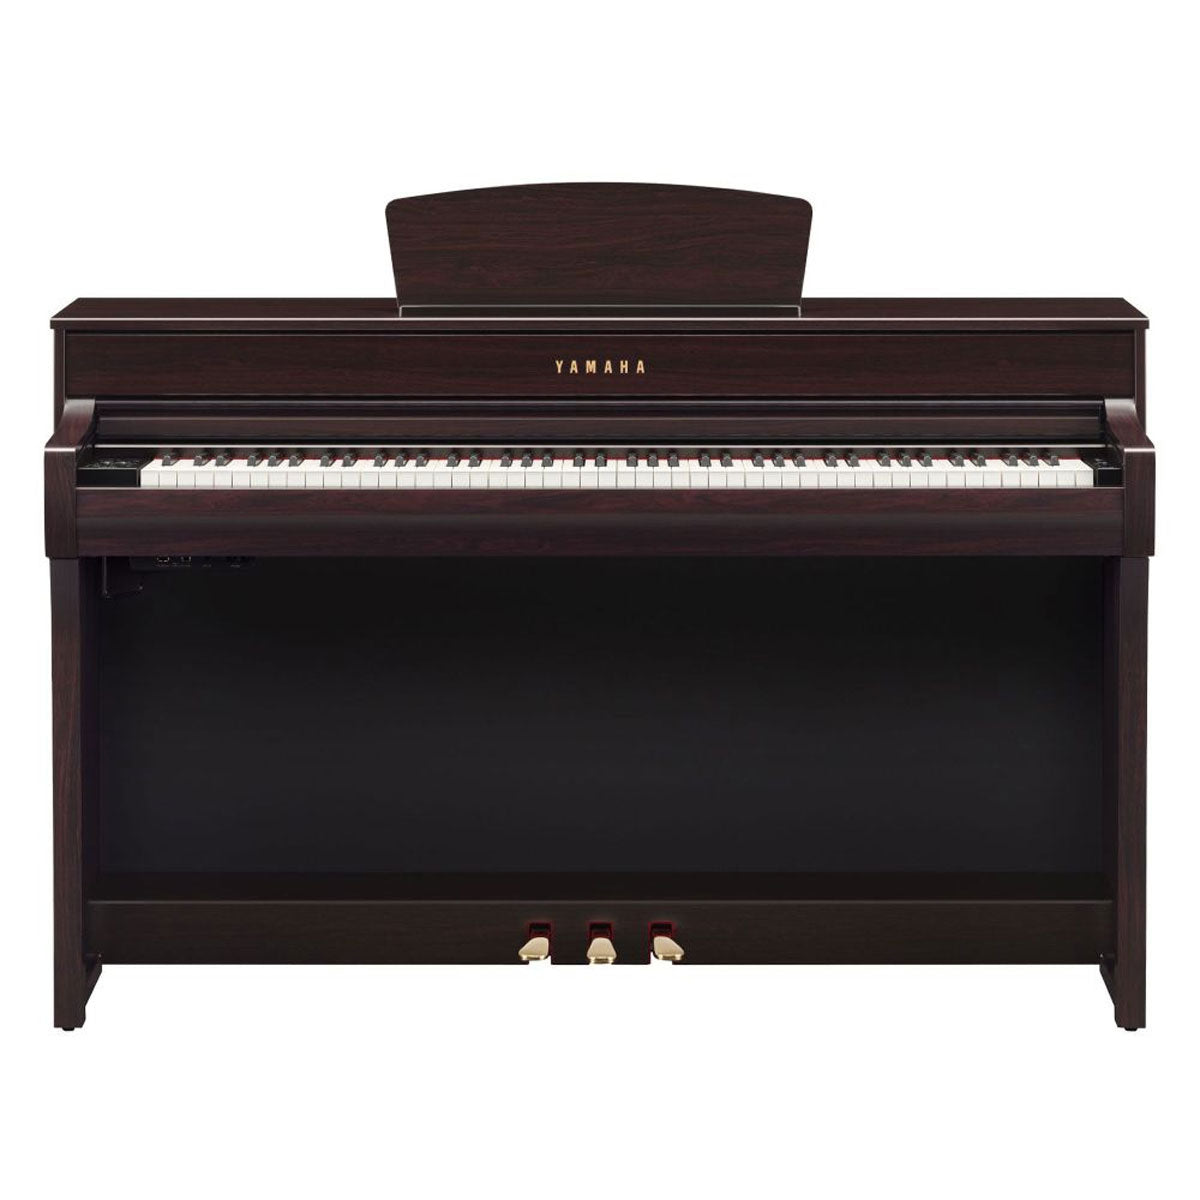 Yamaha CLP-735R Clavinova 88-Keys Digital Piano With Bench